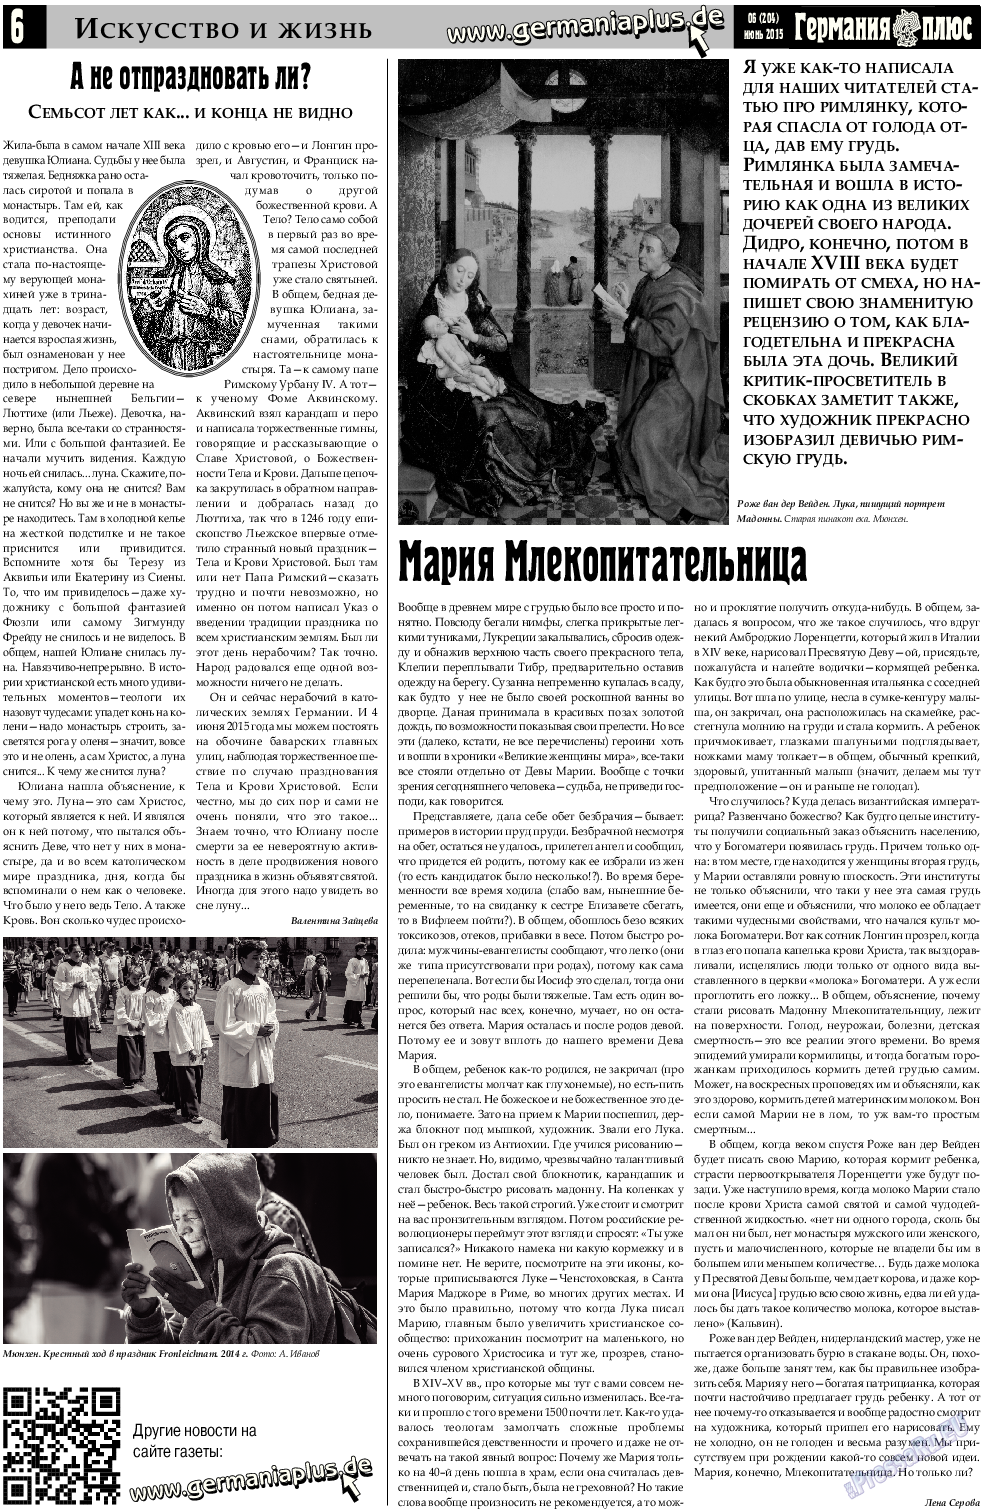 Германия плюс, газета. 2015 №6 стр.6